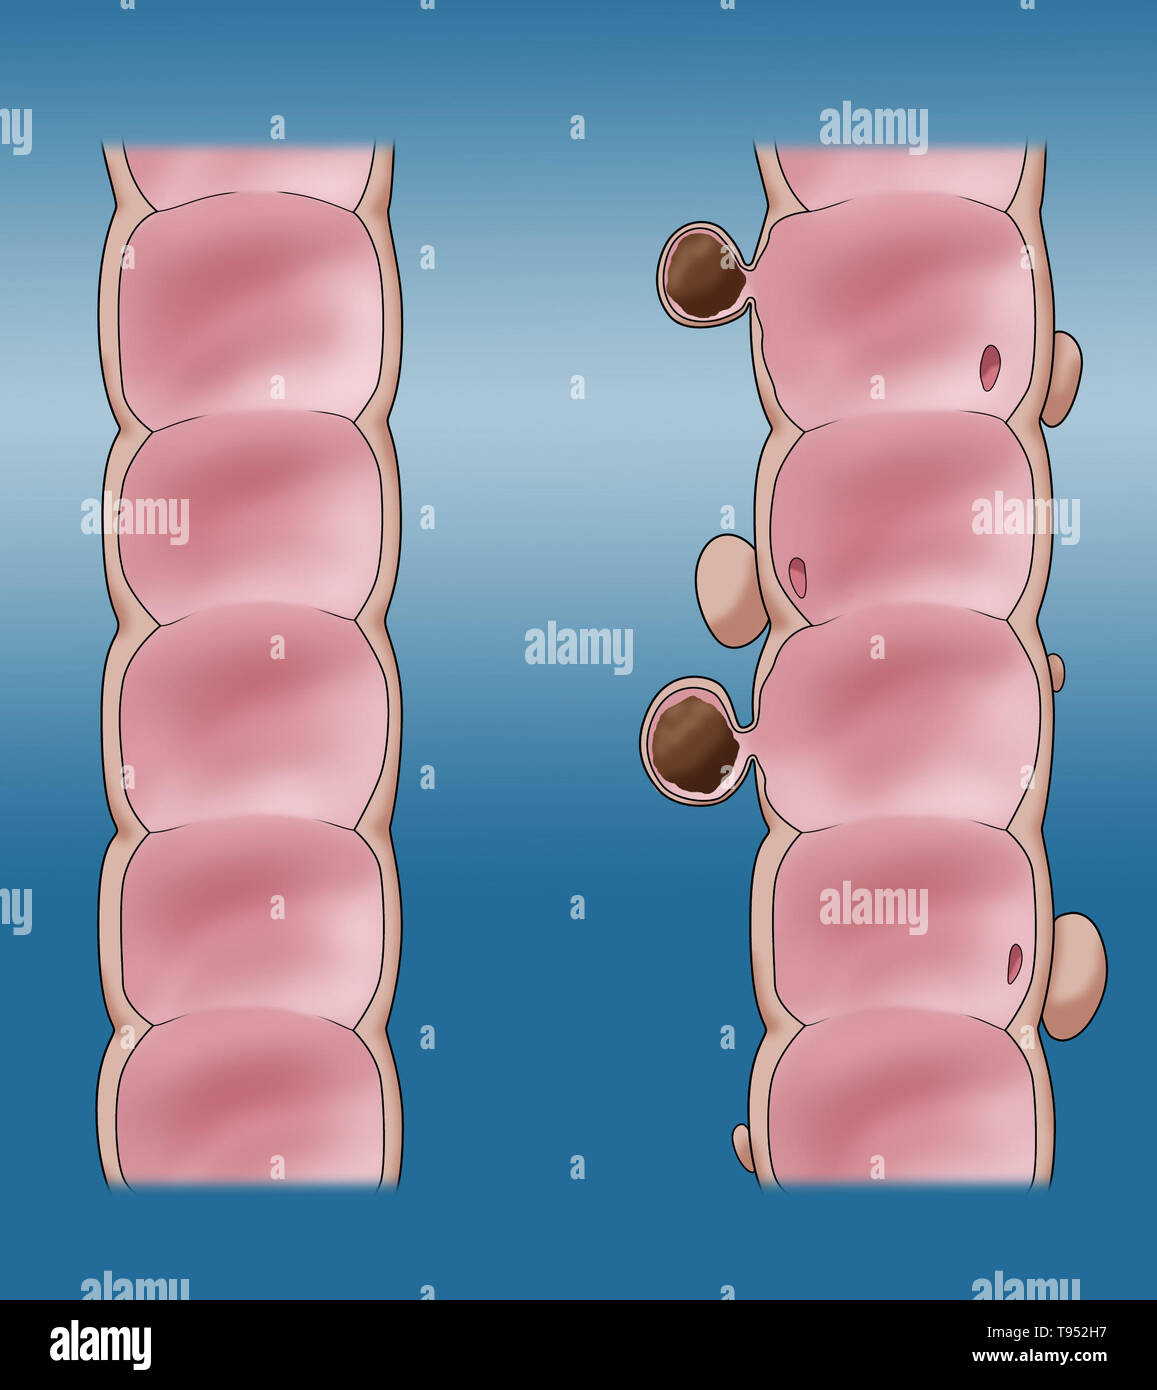 Ilustración comparando la apariencia de un colon sano (derecha) a uno con la diverticulosis (derecha). Foto de stock